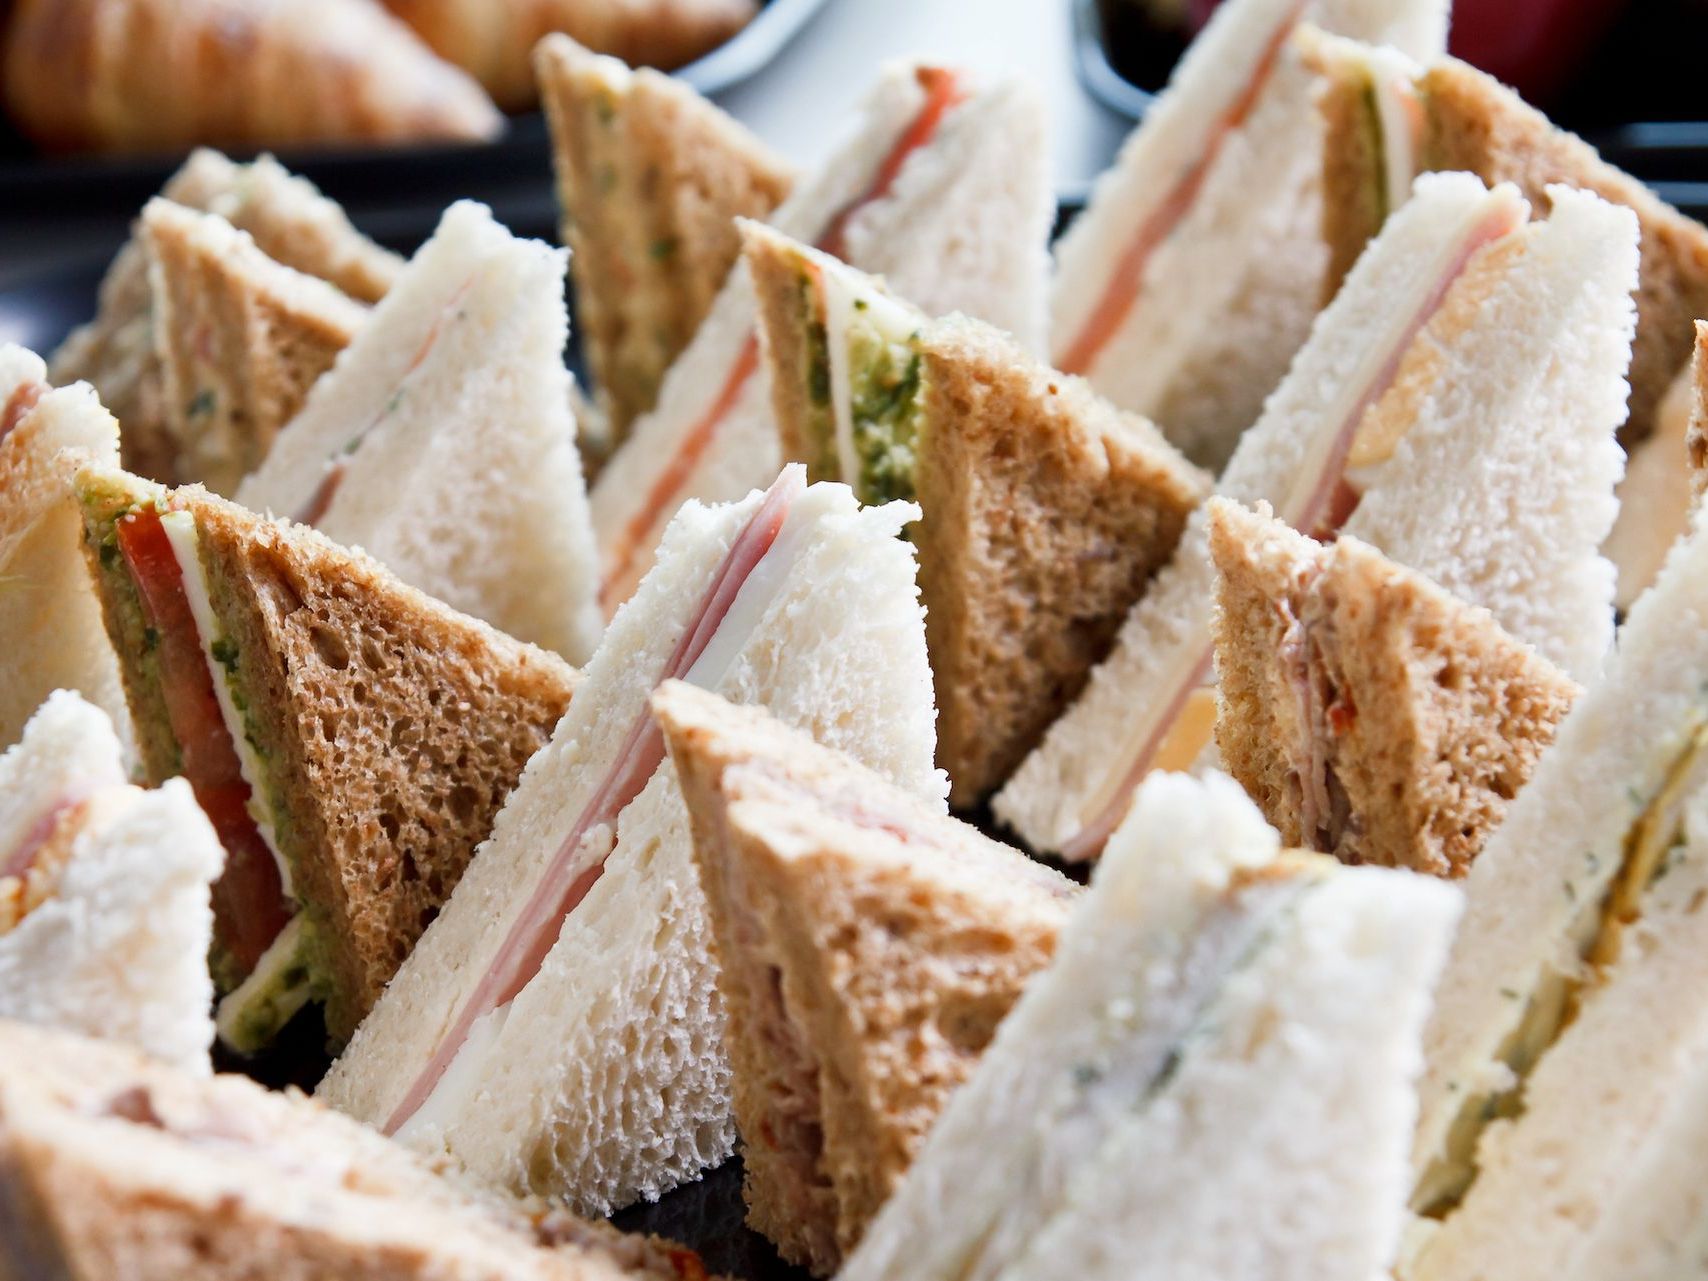 Mixed sandwich platter